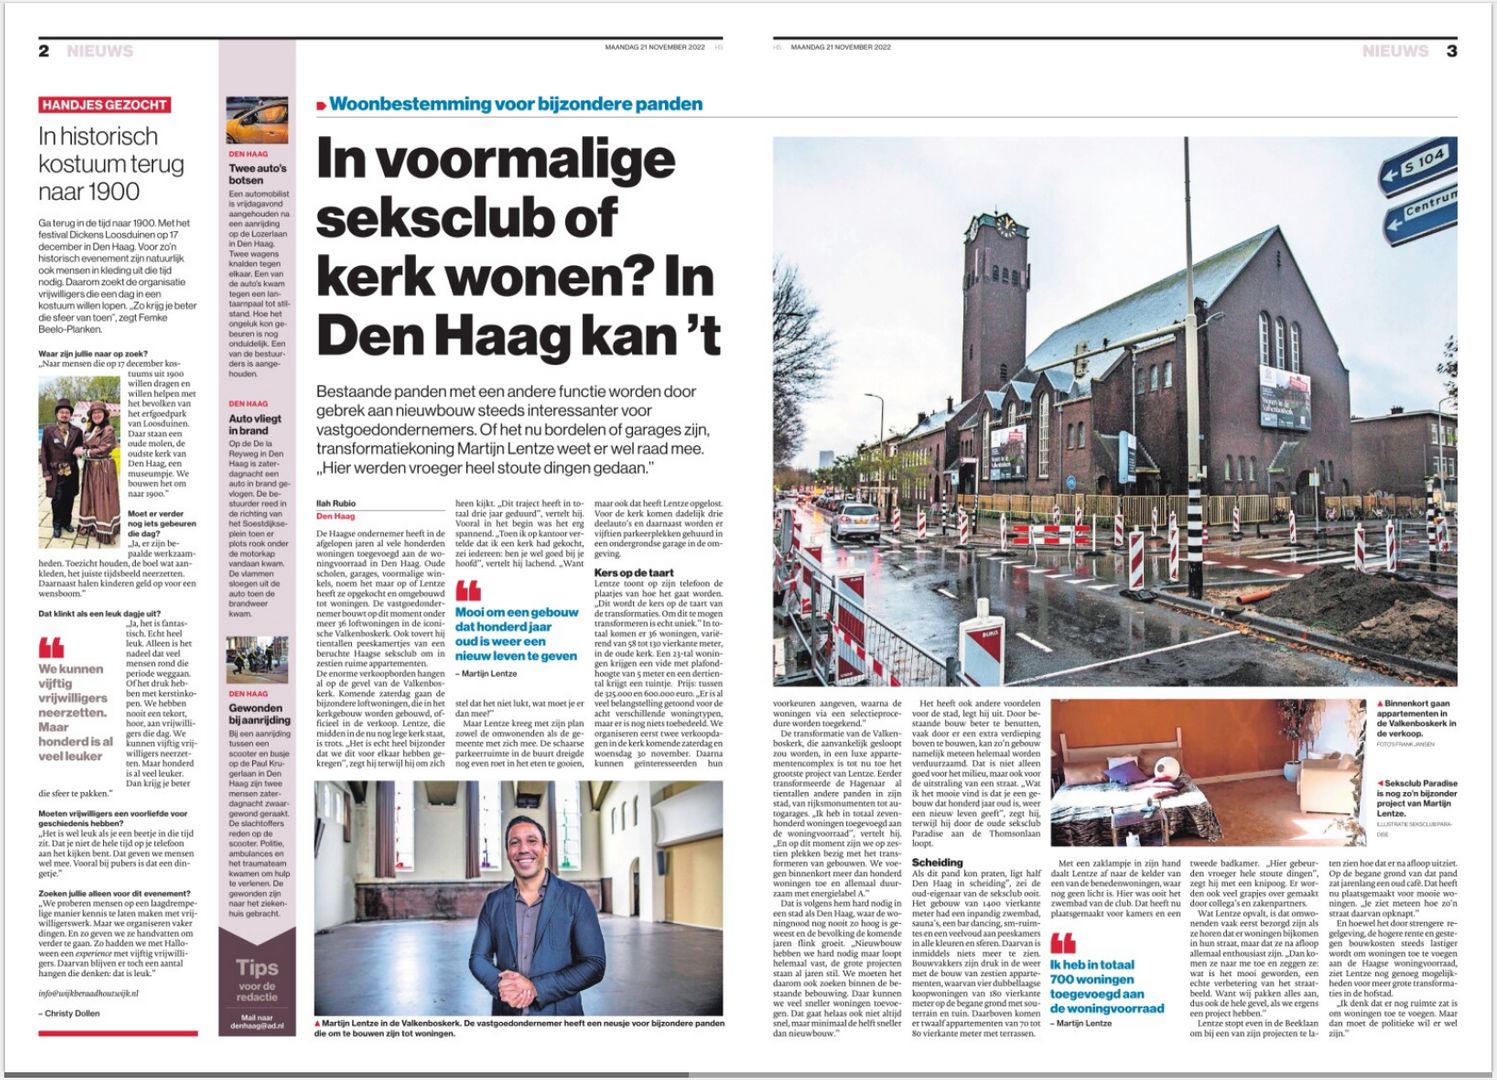 In voormalige seksclub of kerk wonen? In Den Haag kan het | Het Algemeen Dagblad